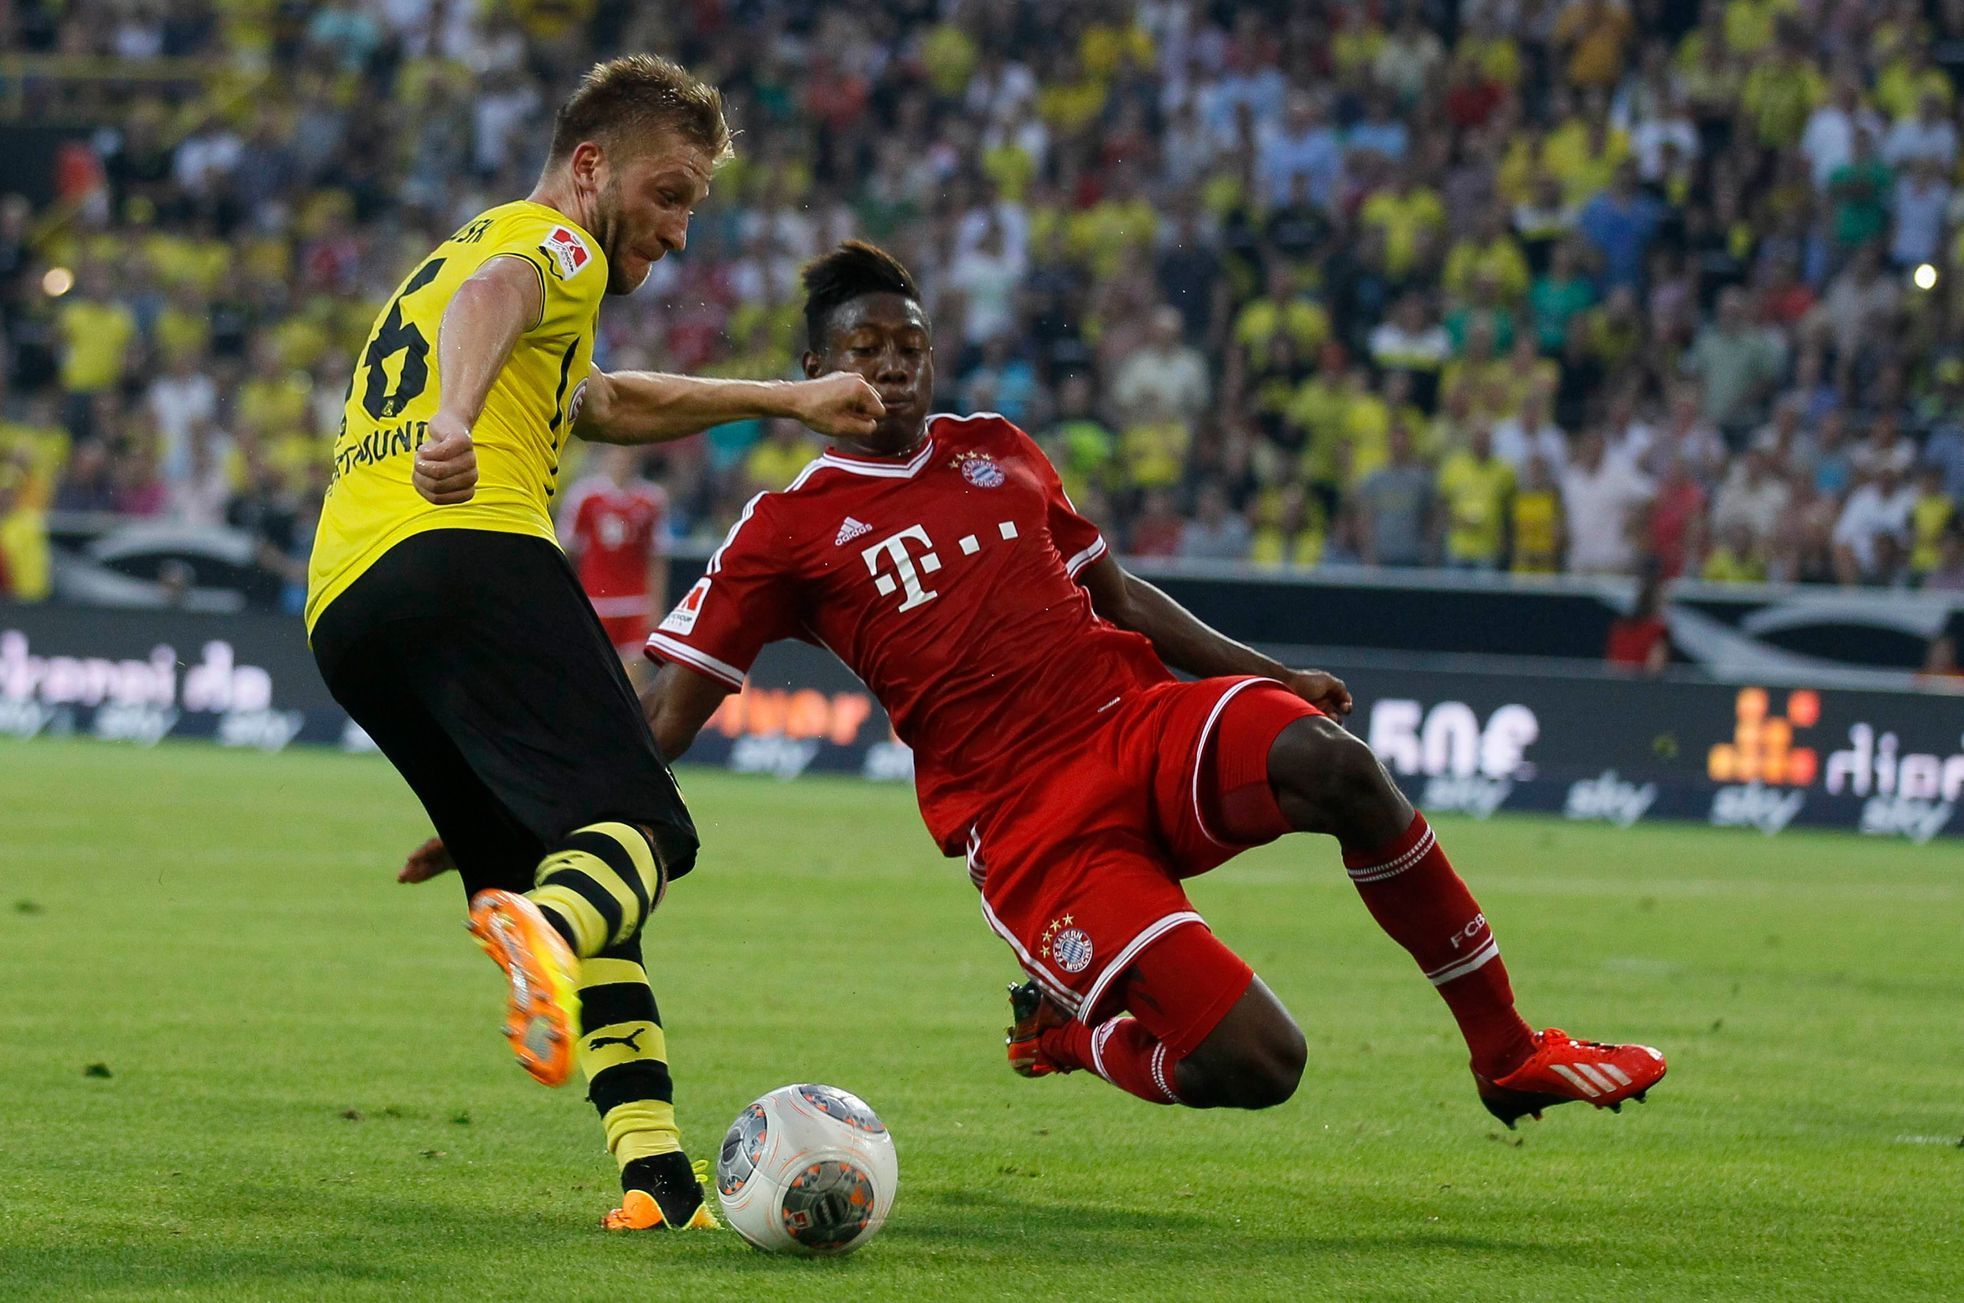 Fotbal, německý Superpohár, Dortmund - Bayern: Jakub Blaszczykowski - David Alaba